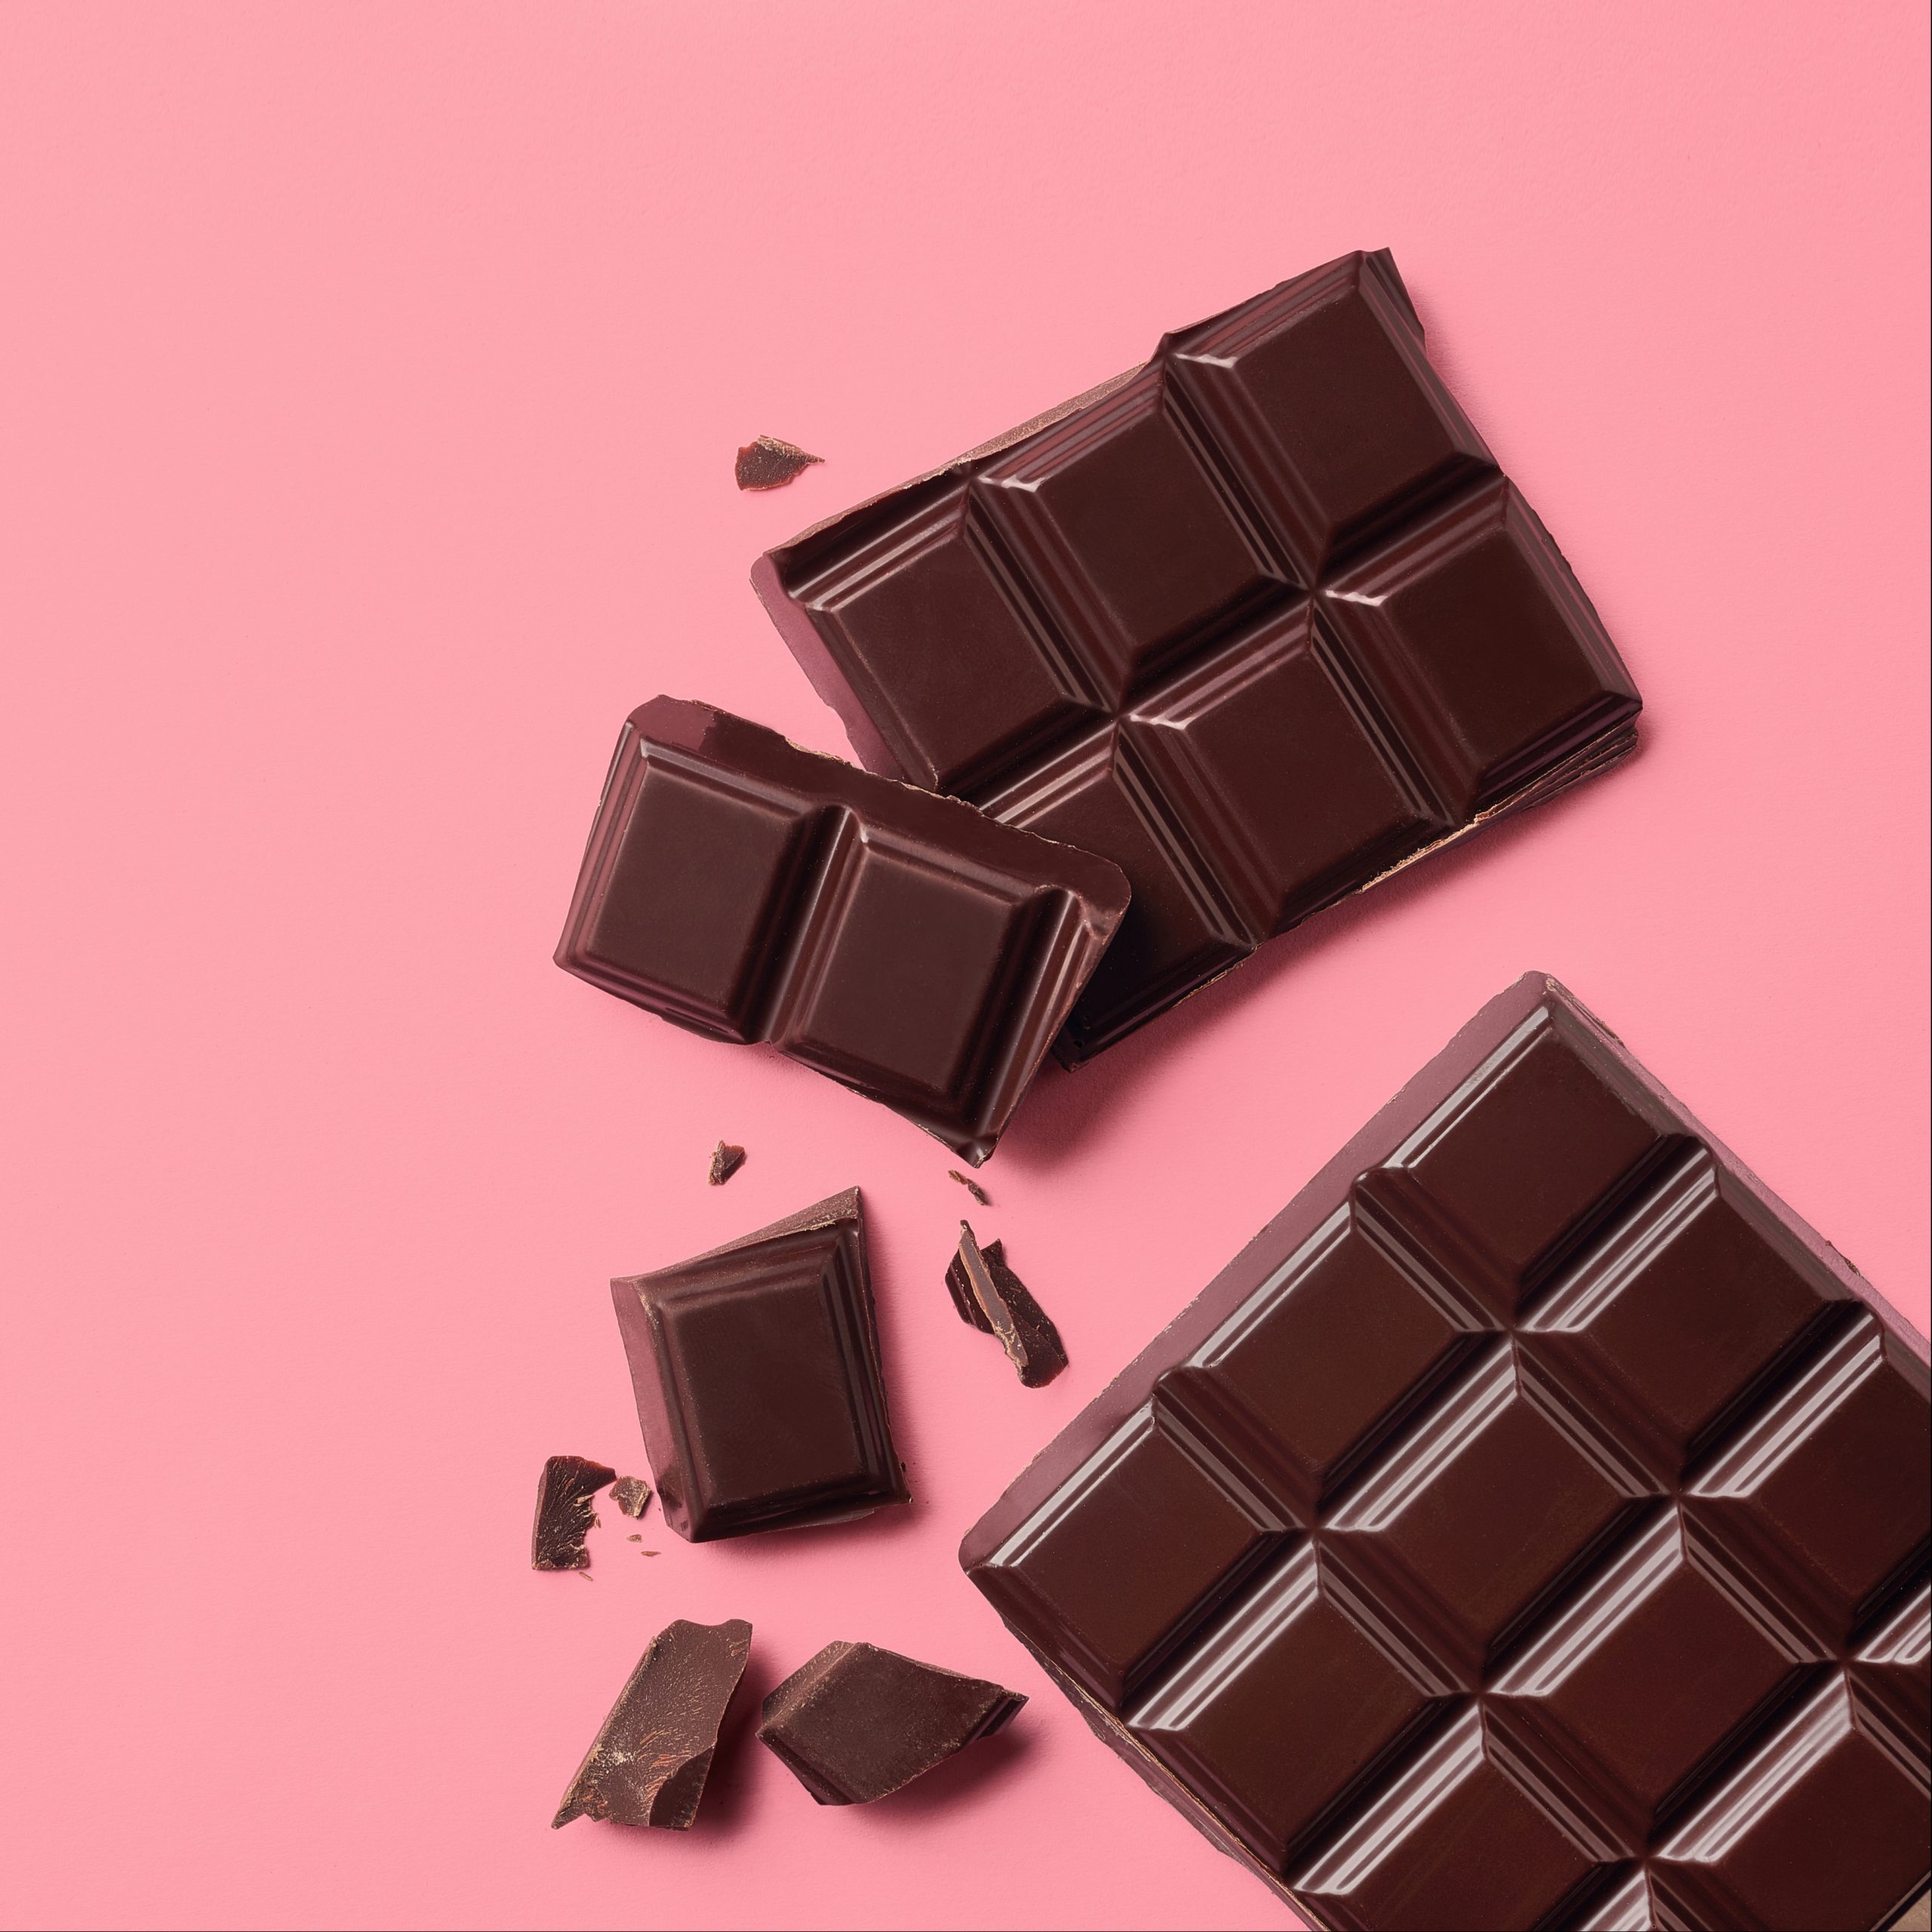 Ciocolata ne poate ajuta sÄ slÄbim